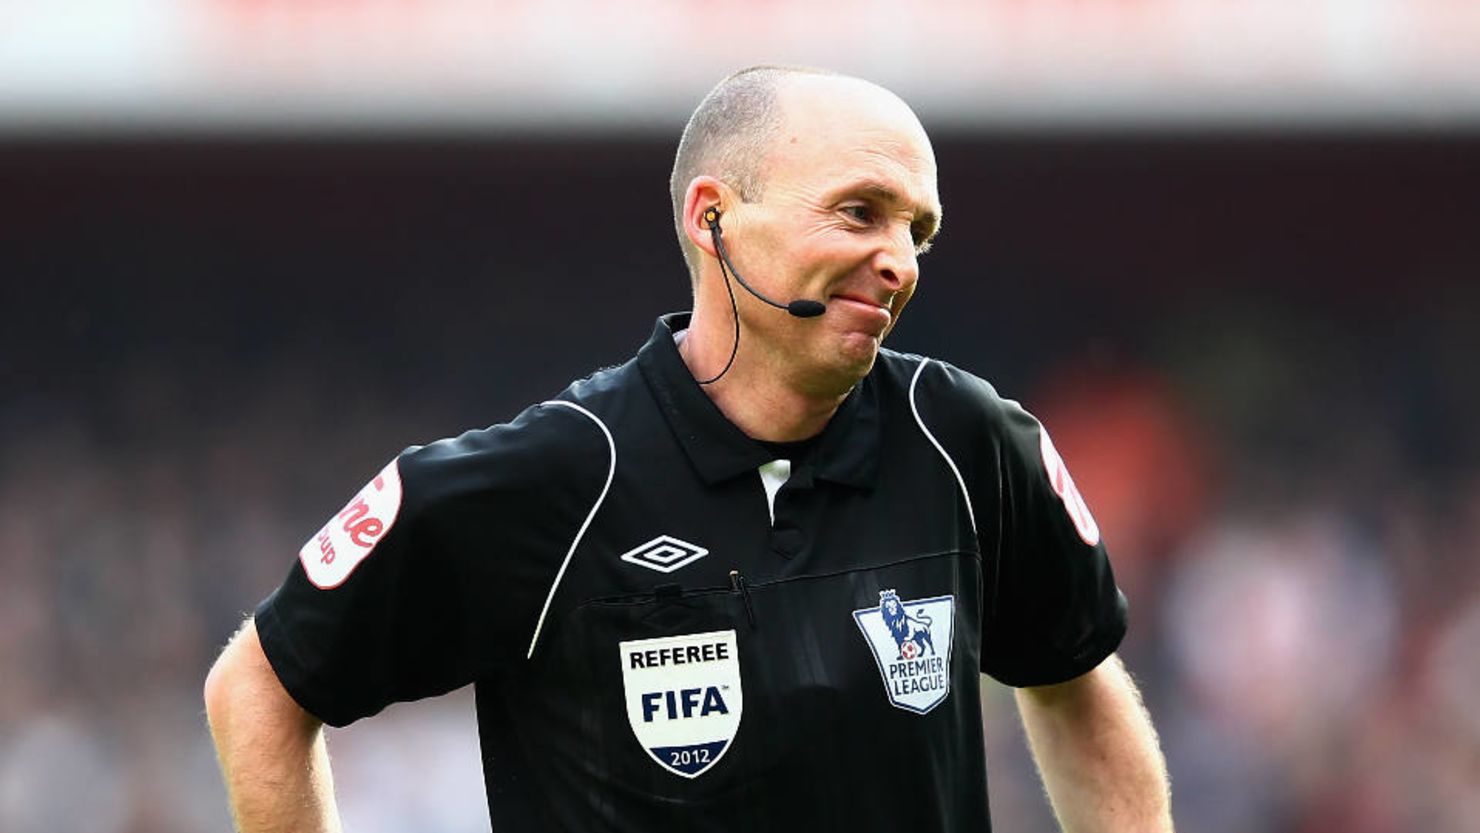 El árbitro inglés Mike Dean durante el partido entre el Tottenham Hotspurs y el Aston Villa en febrero de 2012 en Londres, Inglaterra.